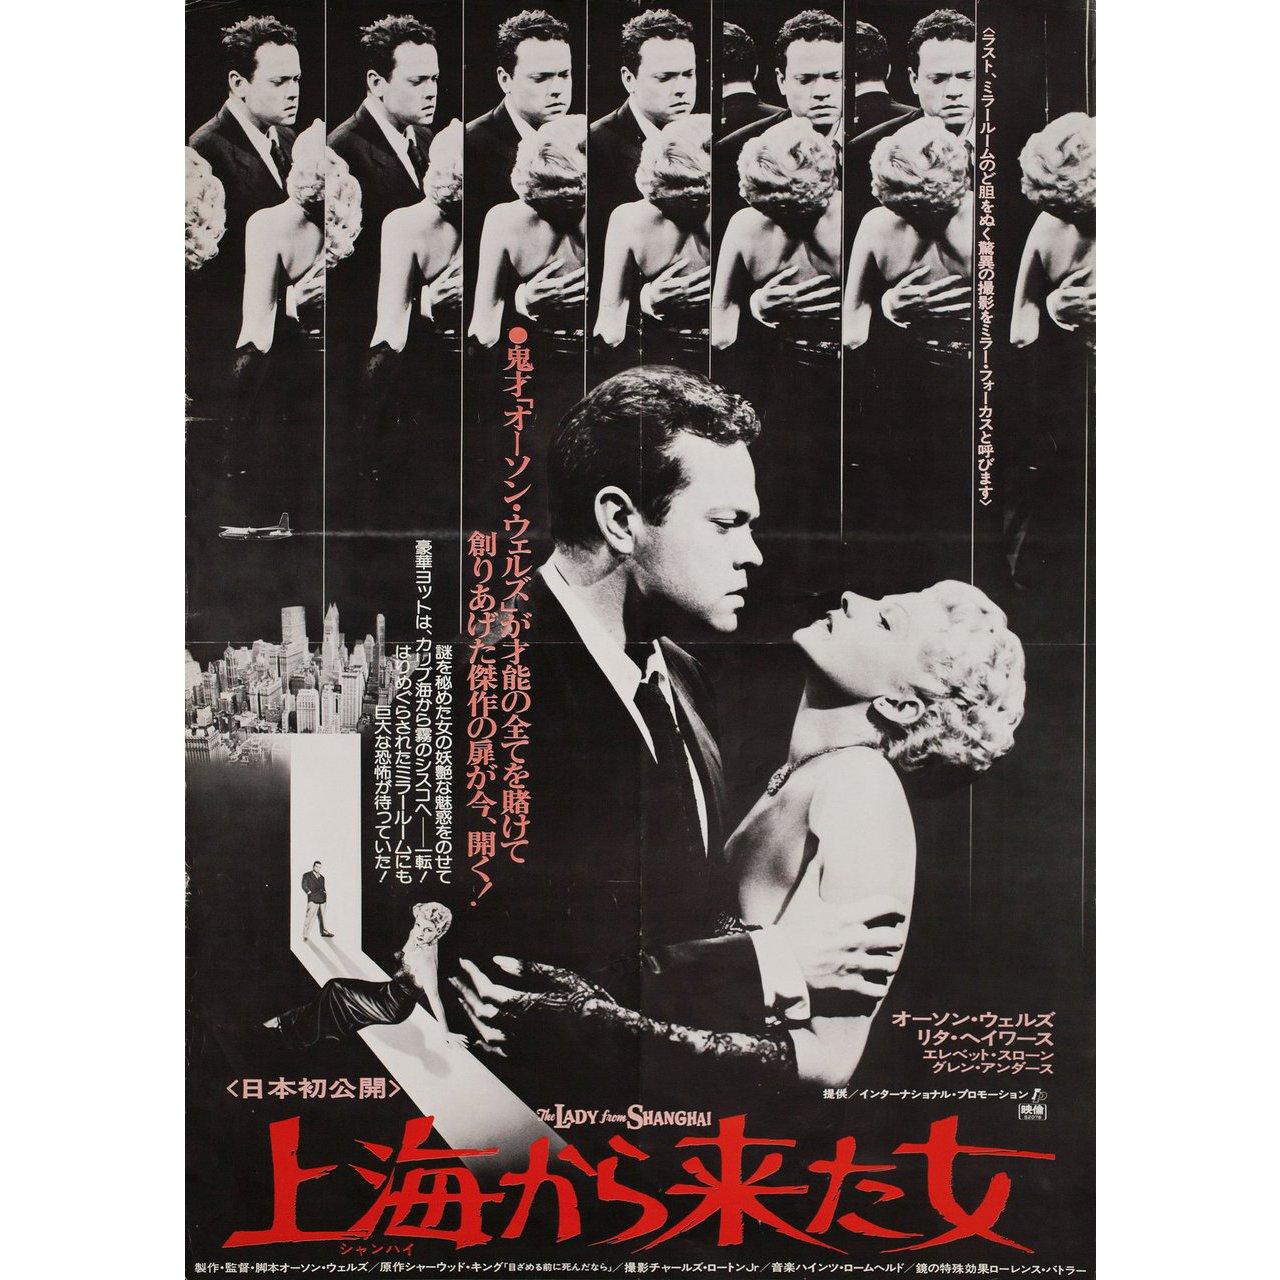 Affiche japonaise du film La Femme de Shanghai, 1977, format B2